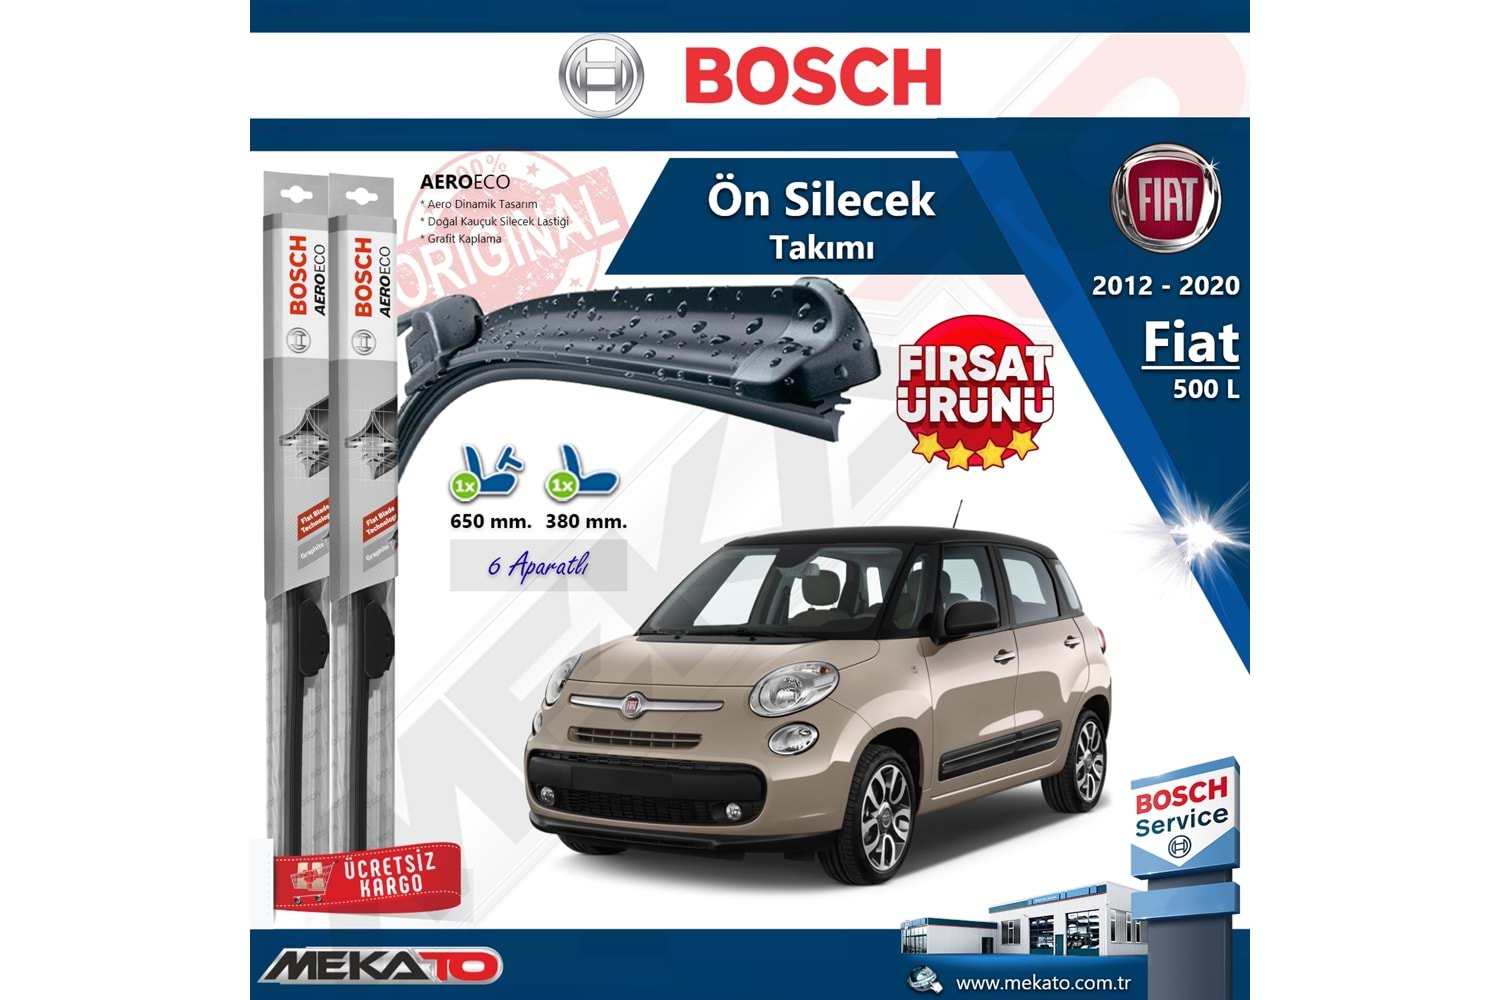 Fiat 500 L Ön Silecek Takımı Bosch Aero Eco 2012-2020